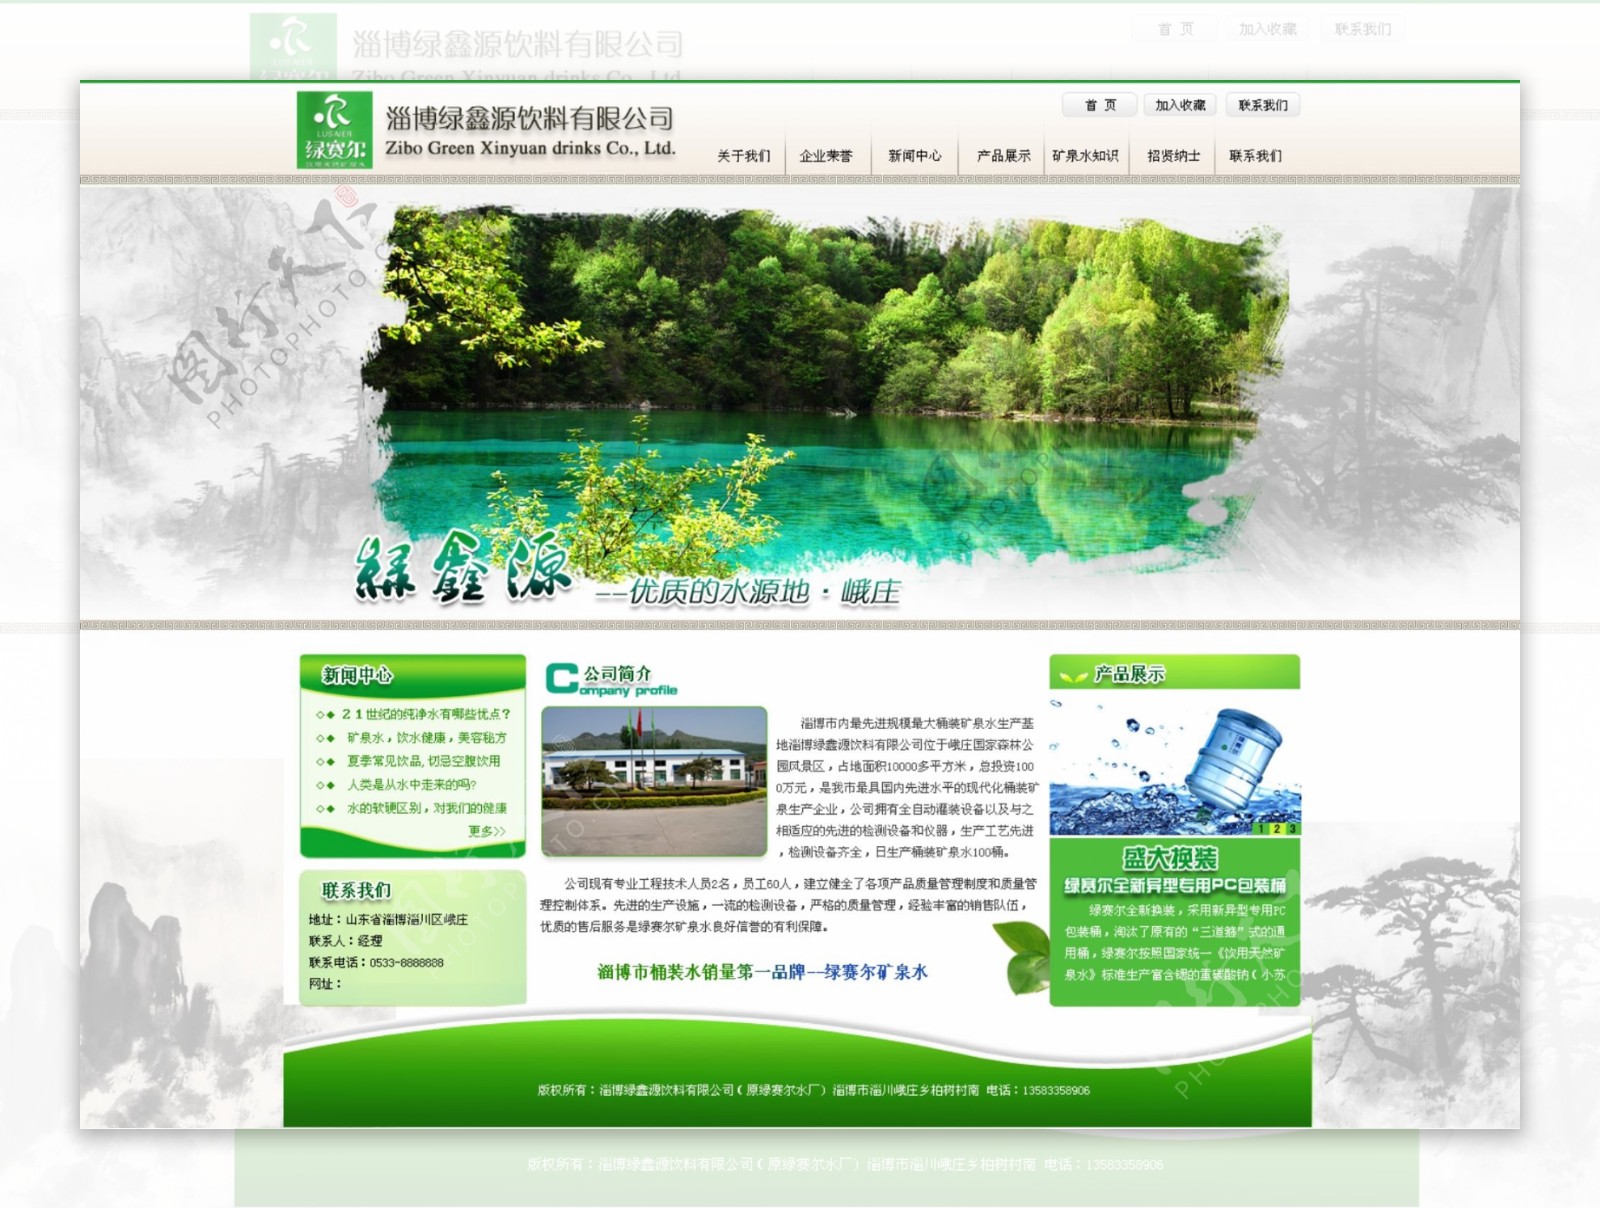 绿色网站图片